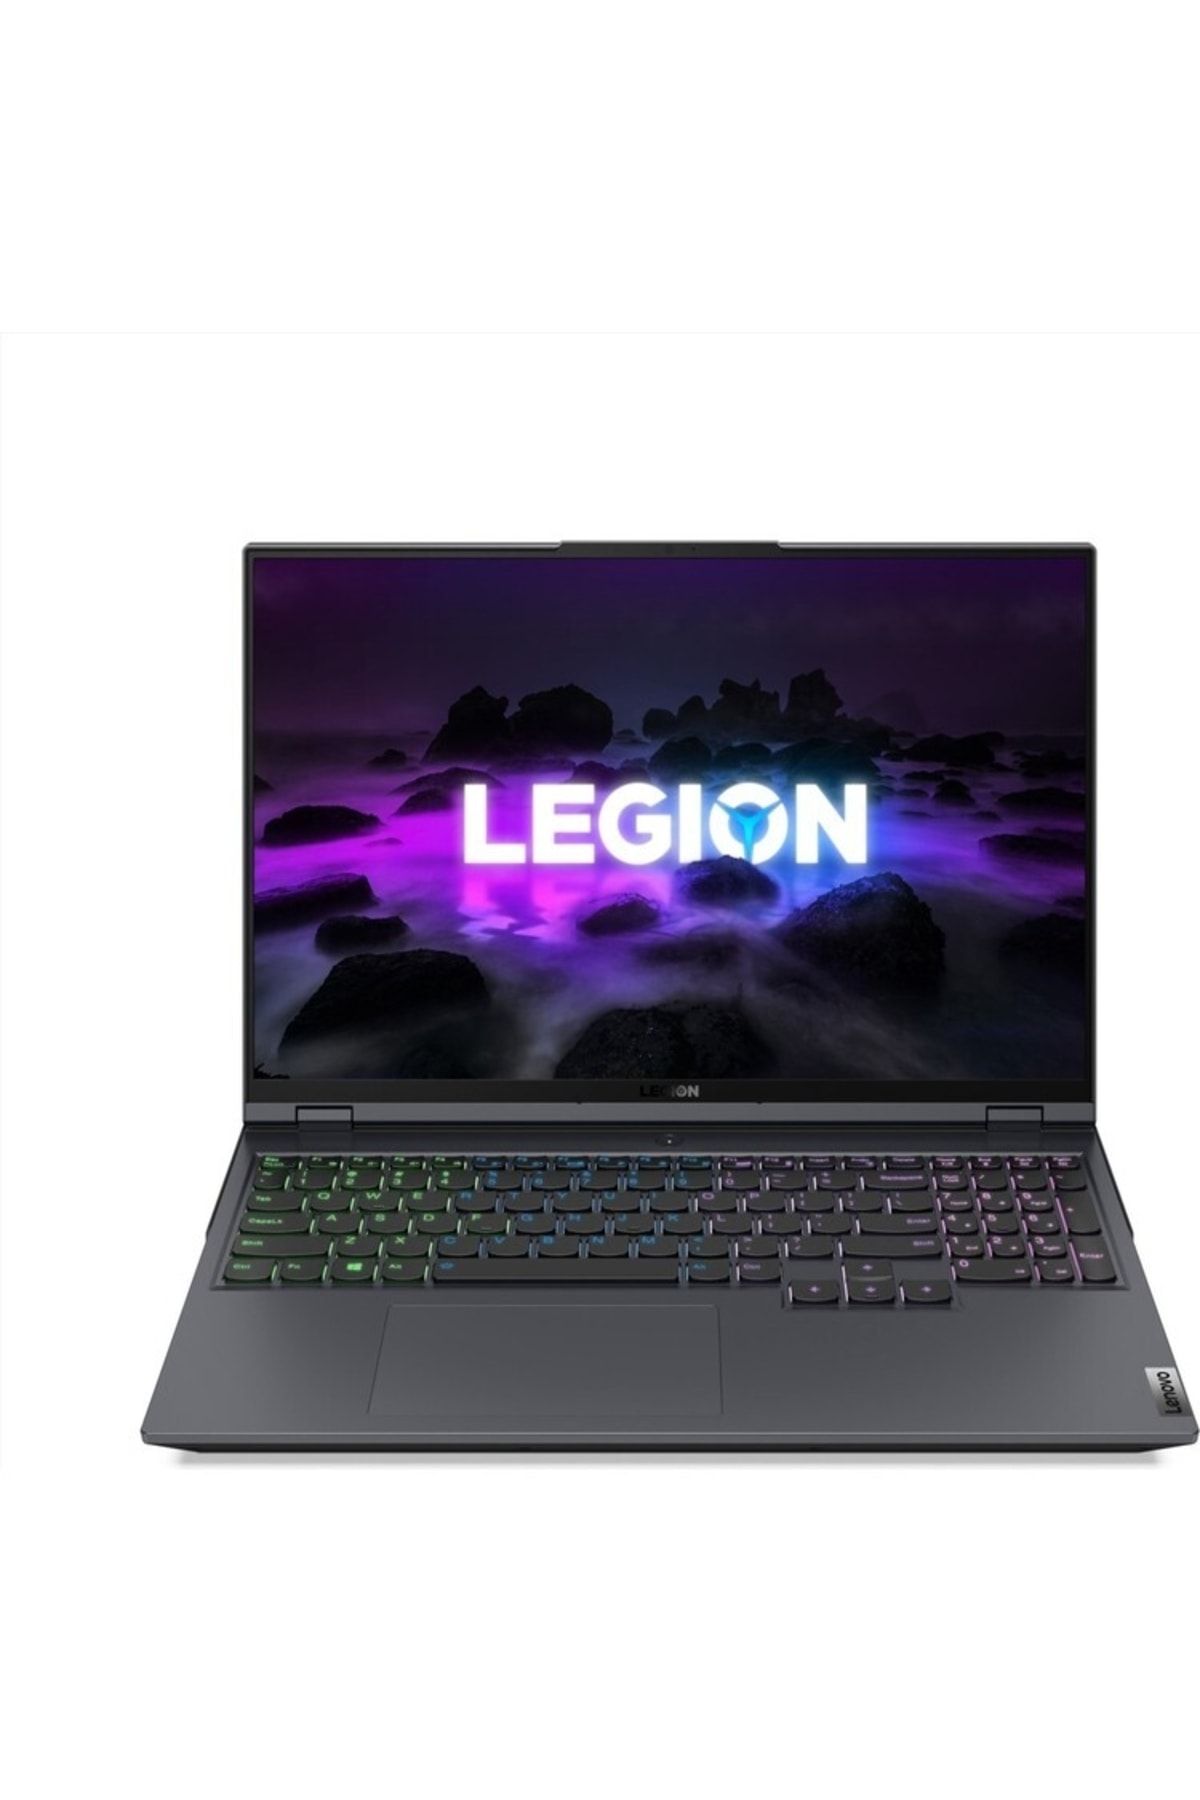 LENOVO Legion 5 Pro Intel Core I7 11800h 64gb 512gb Ssd 6gb Rtx3060 W10p 16" Wqxga 82jd002atx10